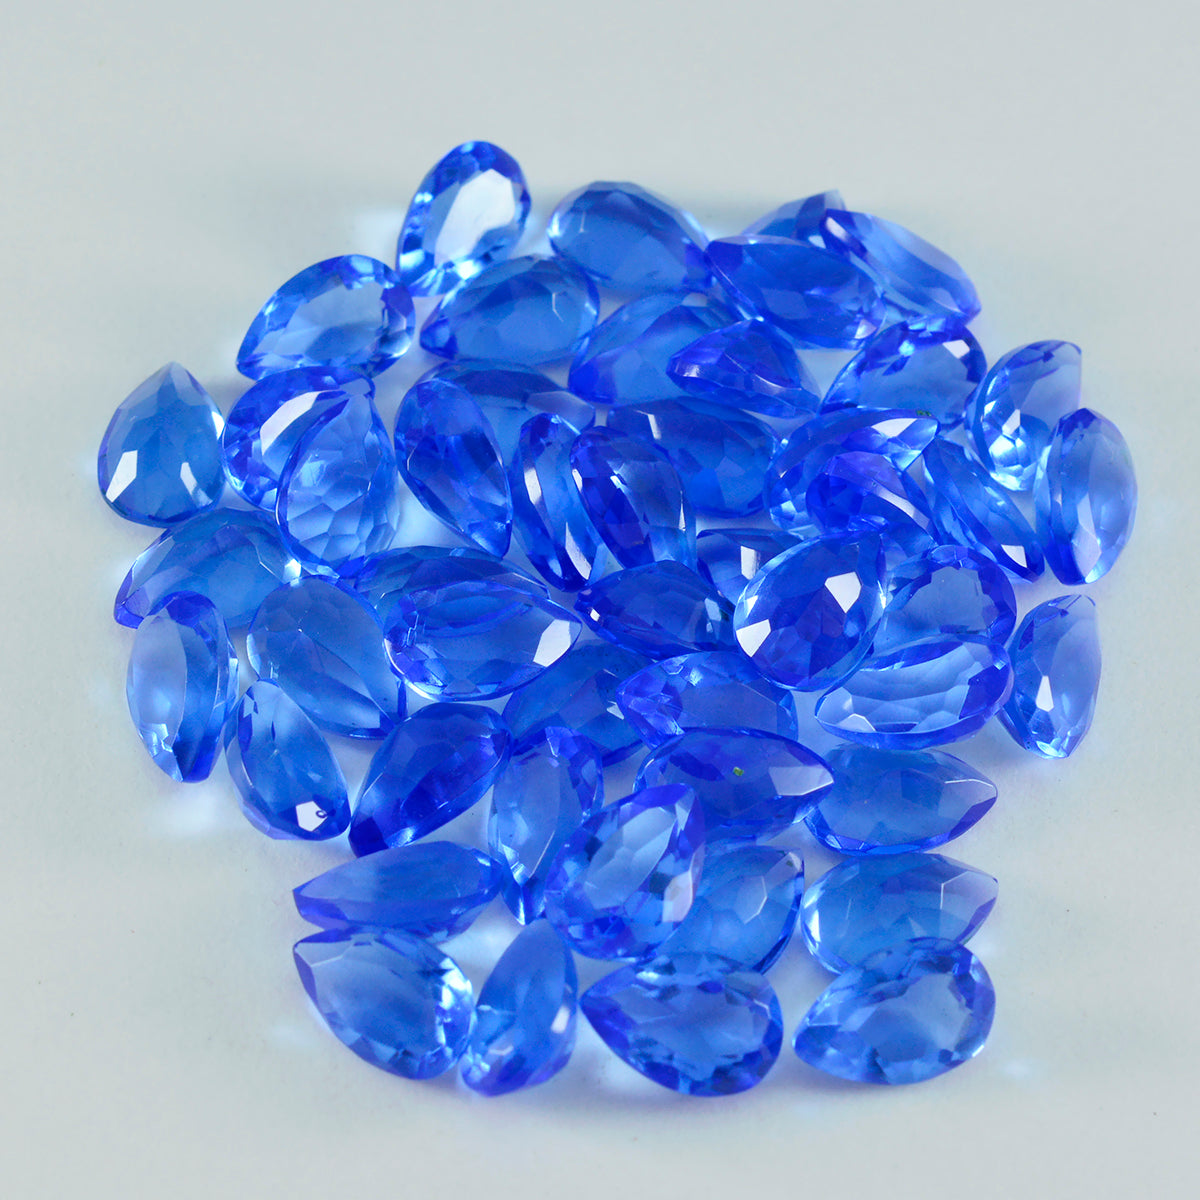 Riyogems 1 Stück blauer Saphir, CZ, facettiert, 5 x 7 mm, Birnenform, schön aussehende Qualitäts-Edelsteine